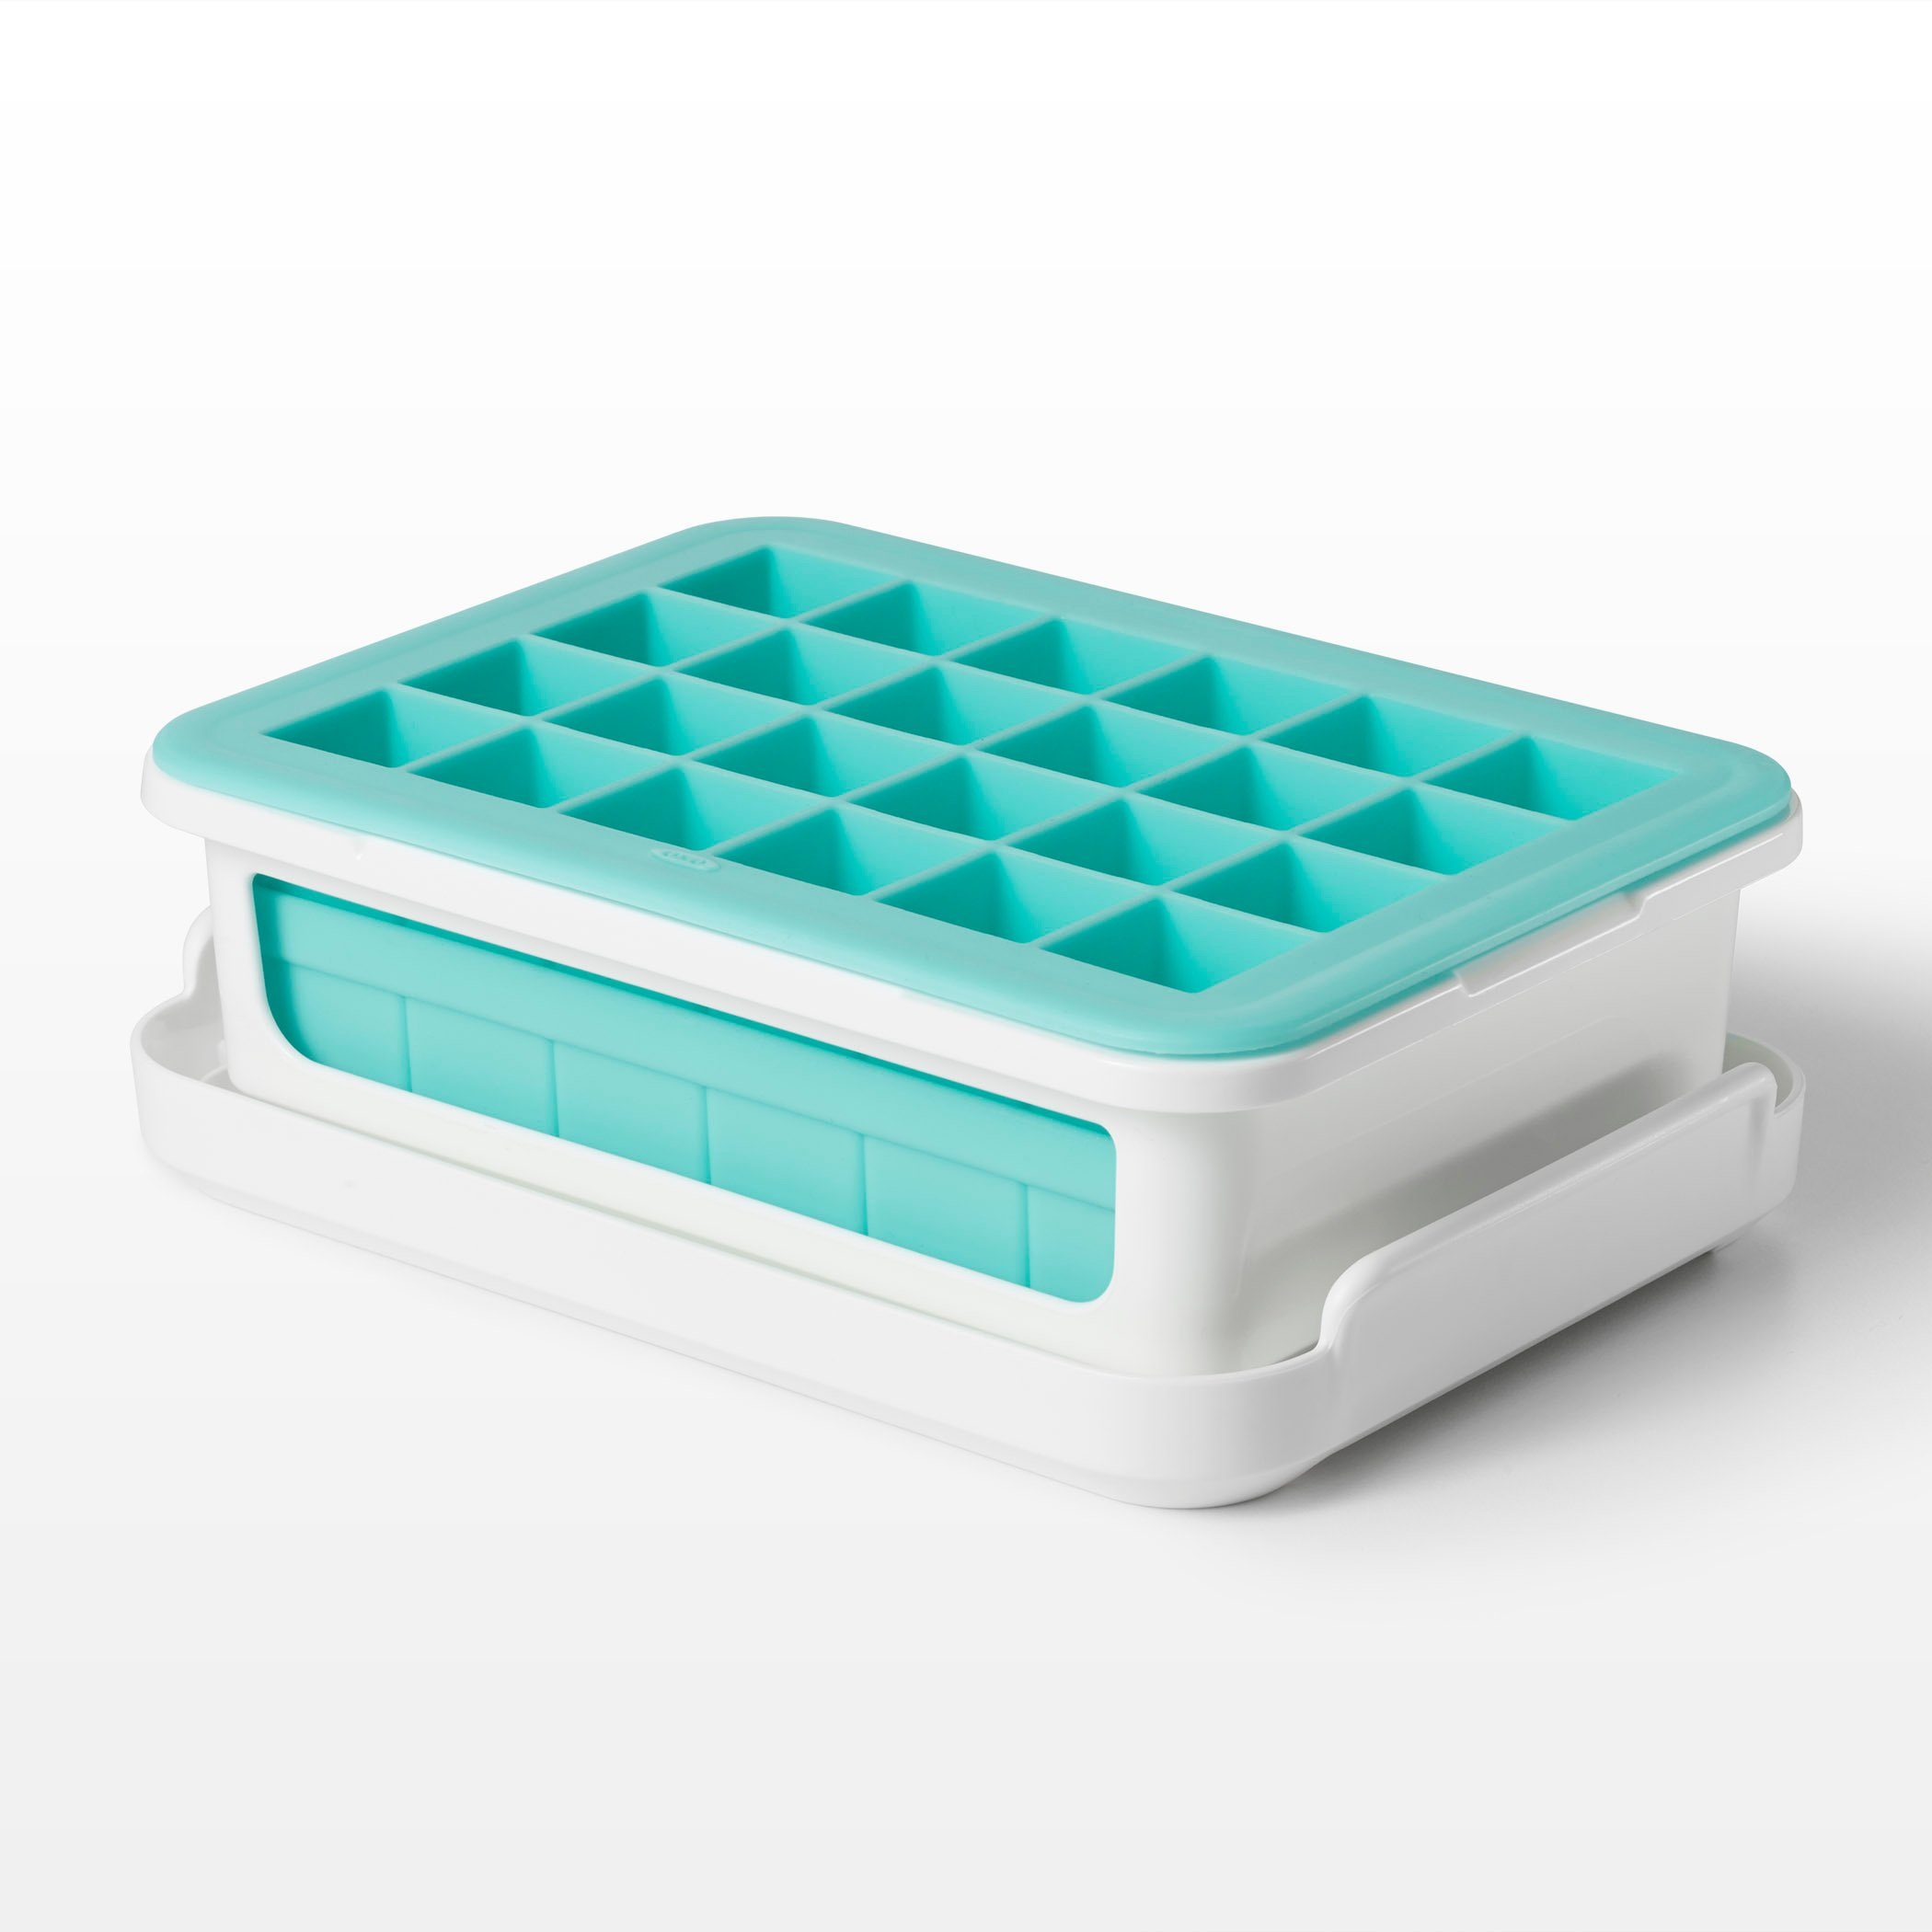 OXO Good Grips Eiswürfelbehälter »OXO Good Grips Auslaufsichere  Eiswürfelform mit Deckel für kleine Eiswürfel – Silikon – weiß/hellblau«  online kaufen | OTTO